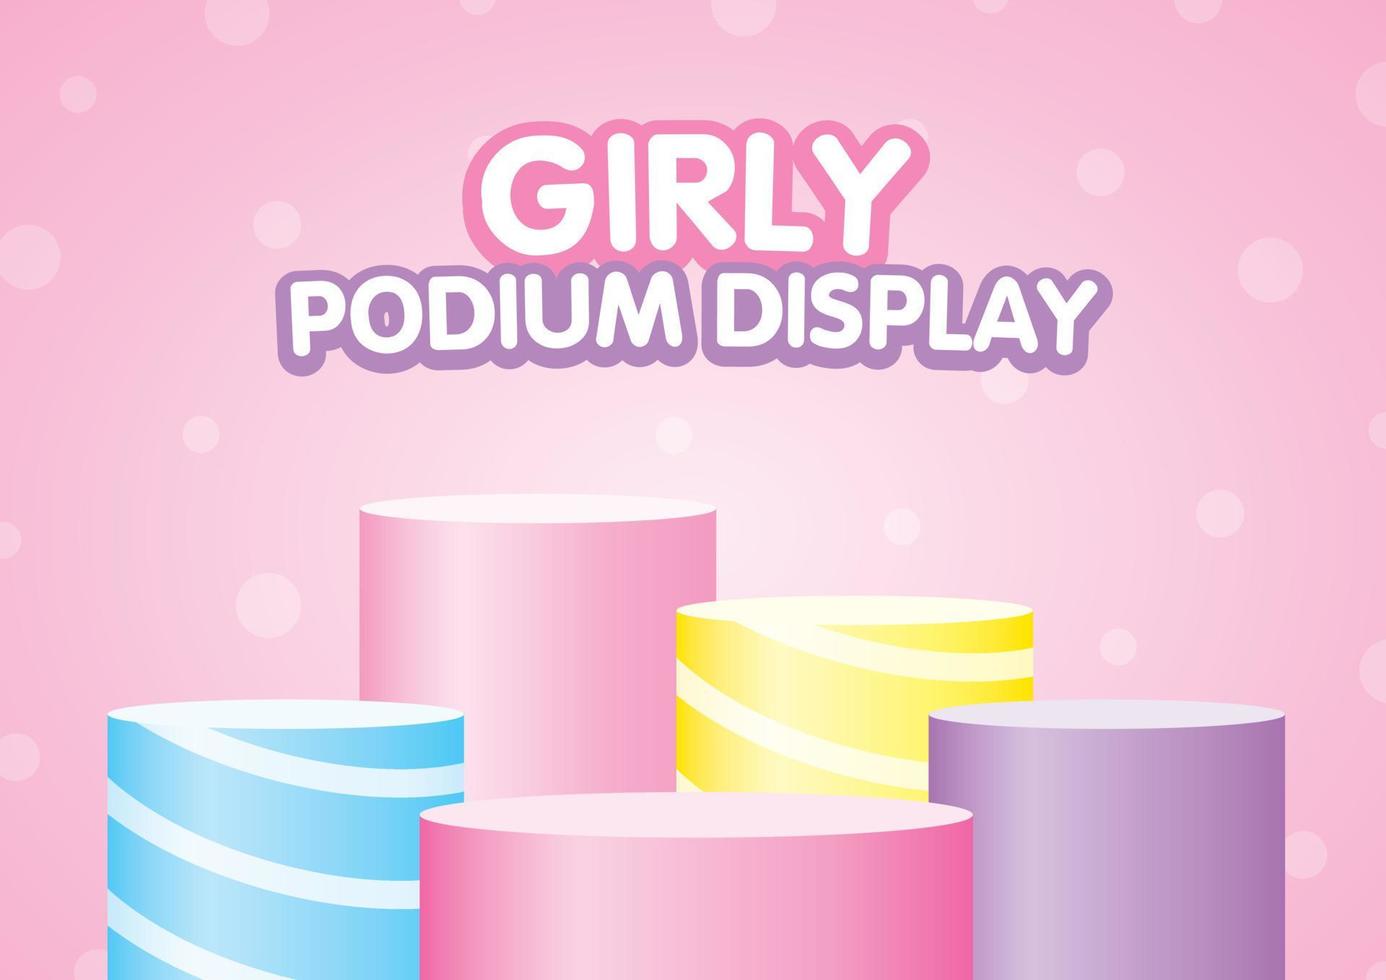 süße bunte pastellfarbene podiumsanzeige stellte 3d-illustrationsvektor auf lieblichem rosa punkthintergrund in mädchenhaftem stil ein, um ihr süßes objekt zu setzen vektor